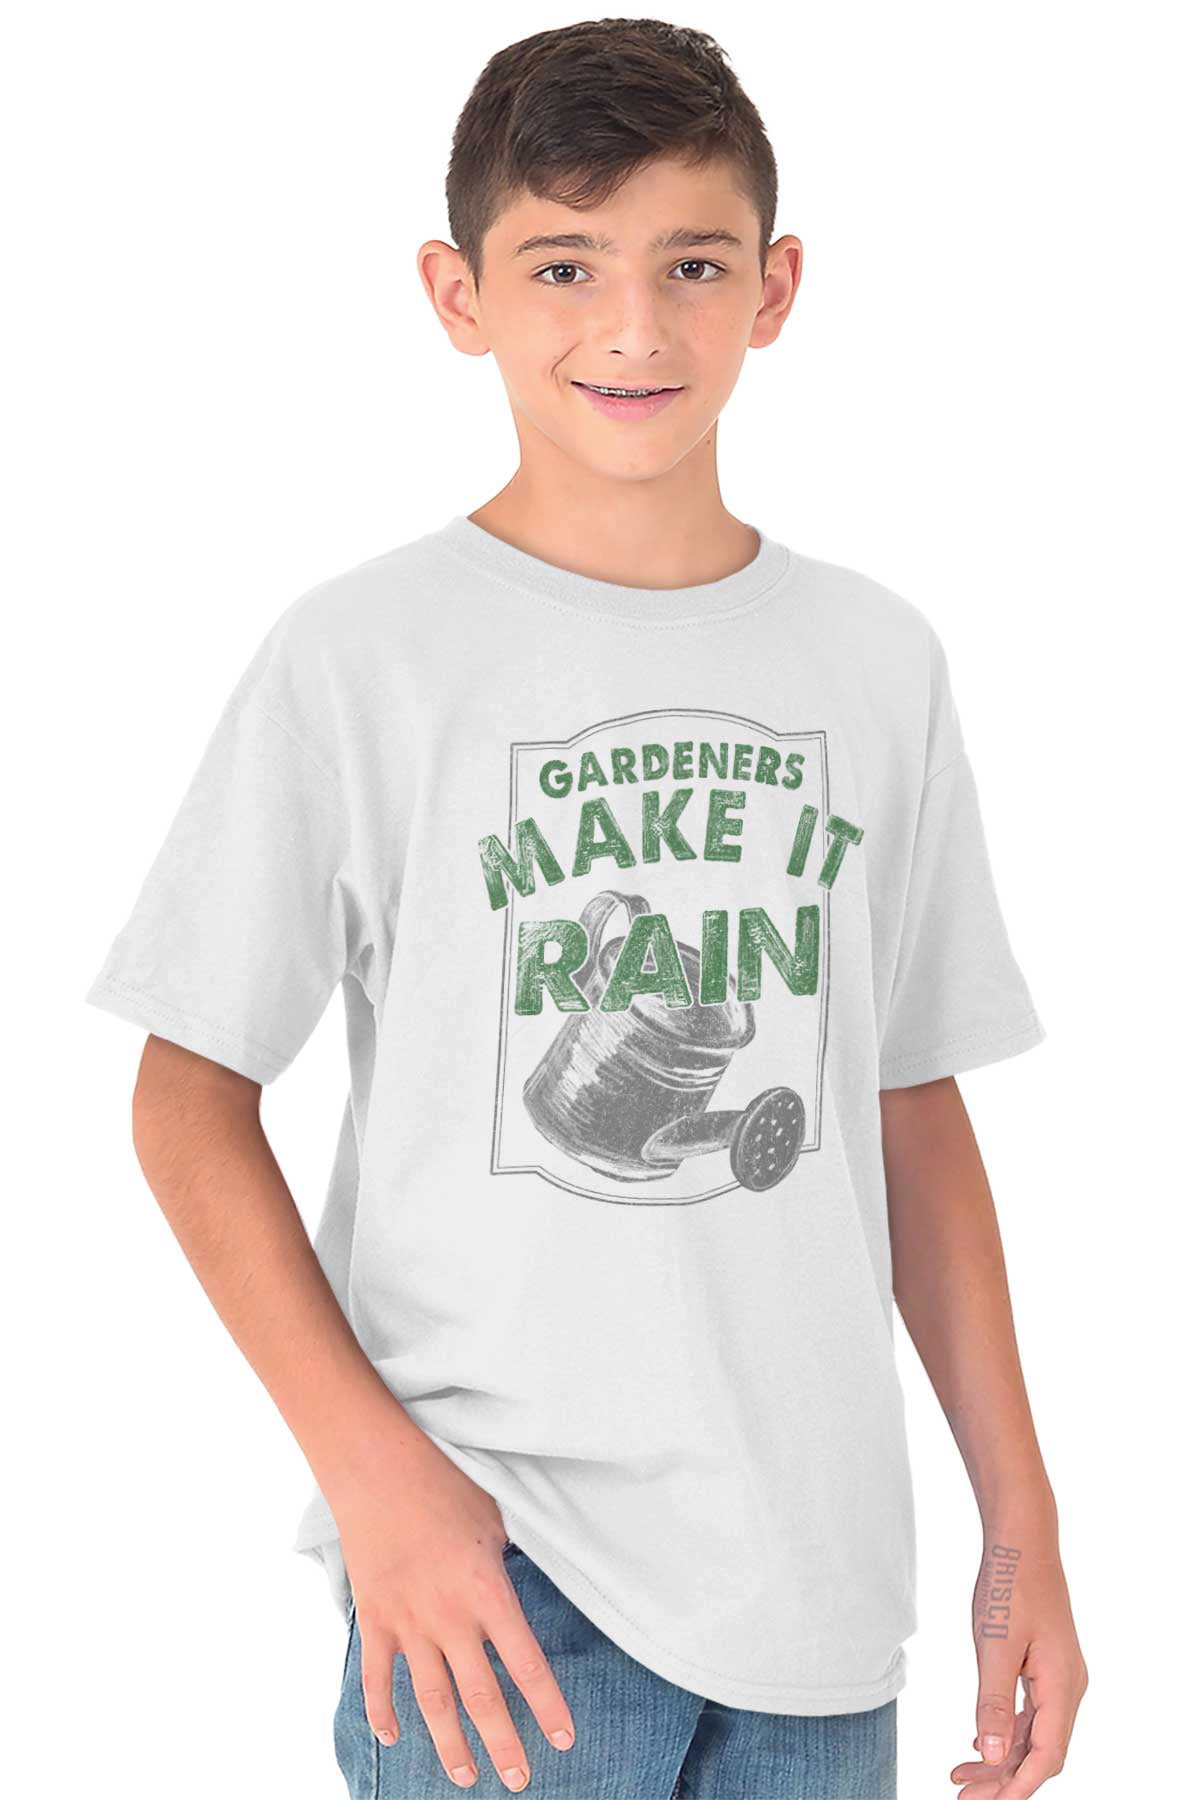 Ovenstående Shredded partner Gardening Youth T-Shirt Tees Tshirt For Kids Gardener Make It Rain Home  Gift - Walmart.com